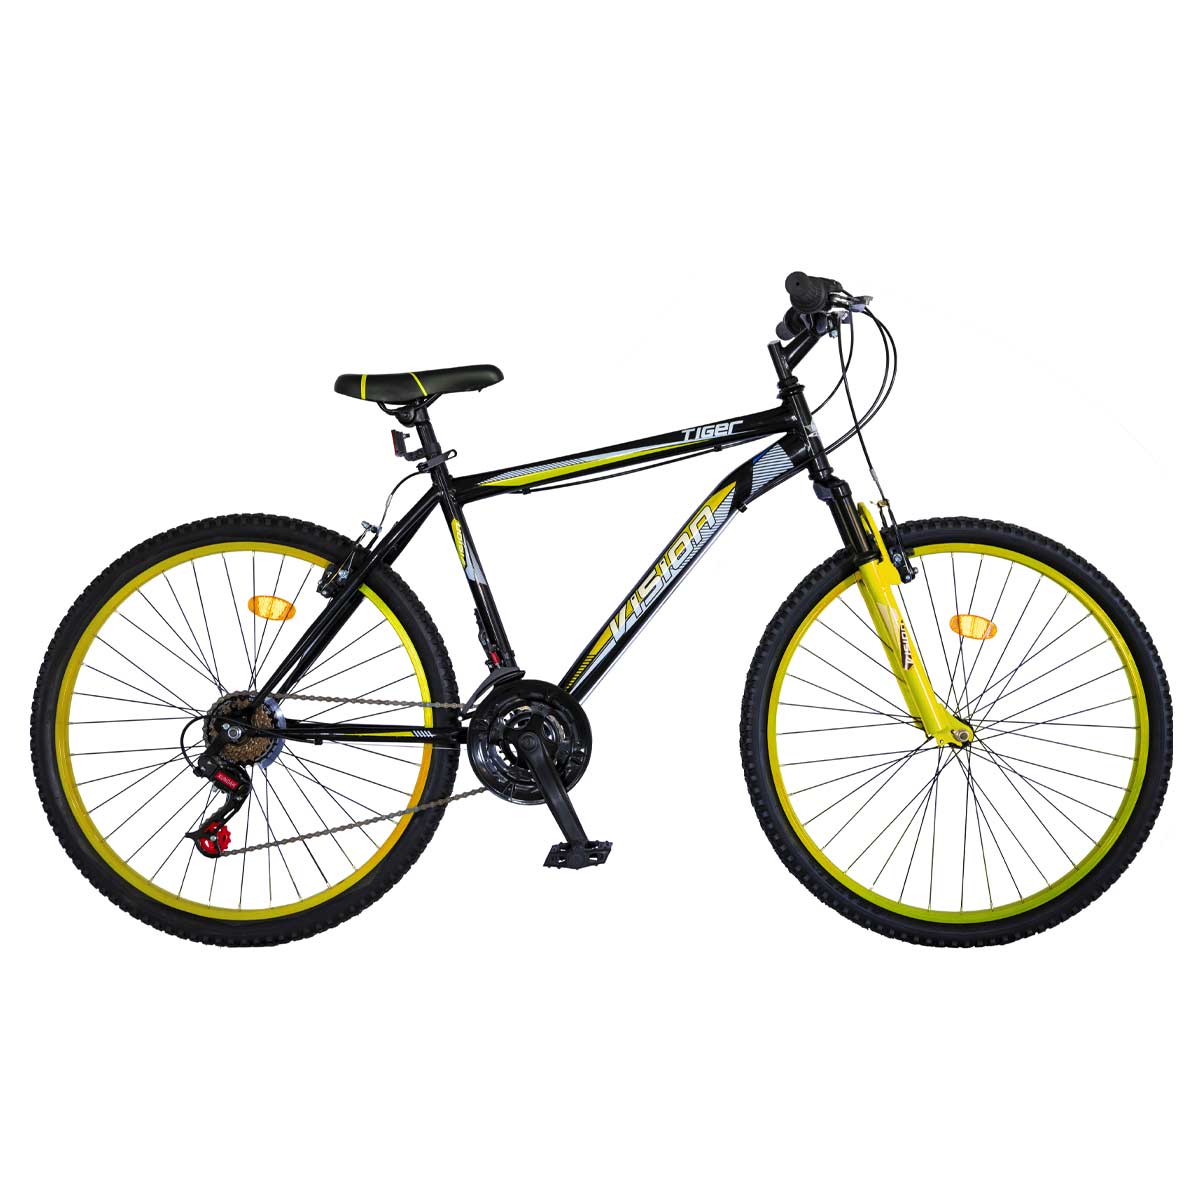 Pexma Belderia велосипед. Черно желтый велосипед помятый. Belderia. Vision a24. Купить в кредит велосипед